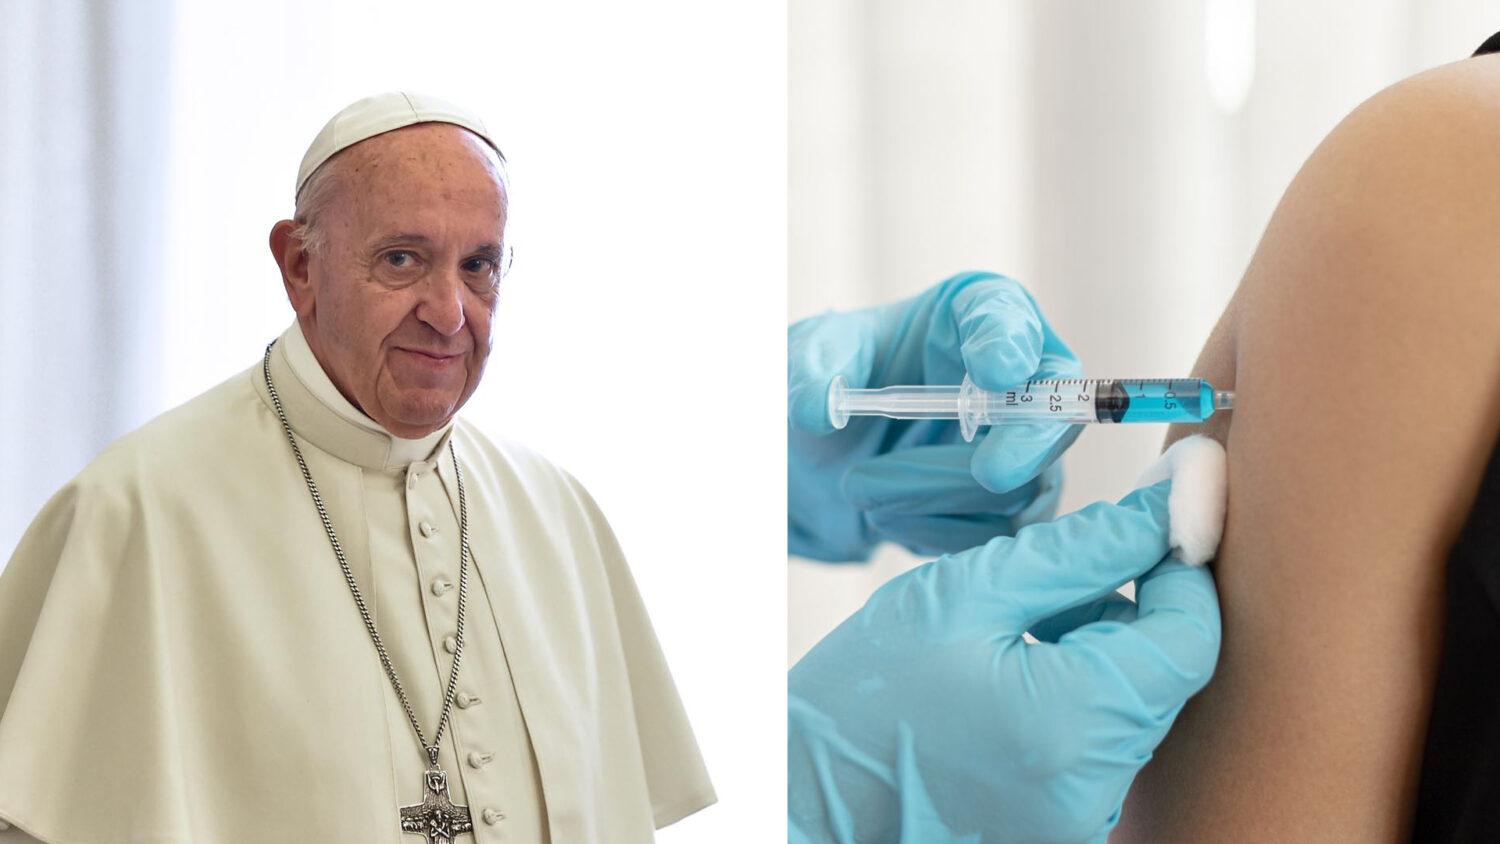 Než sa rozčúlime, že za pápežom môžu len zaočkovaní…